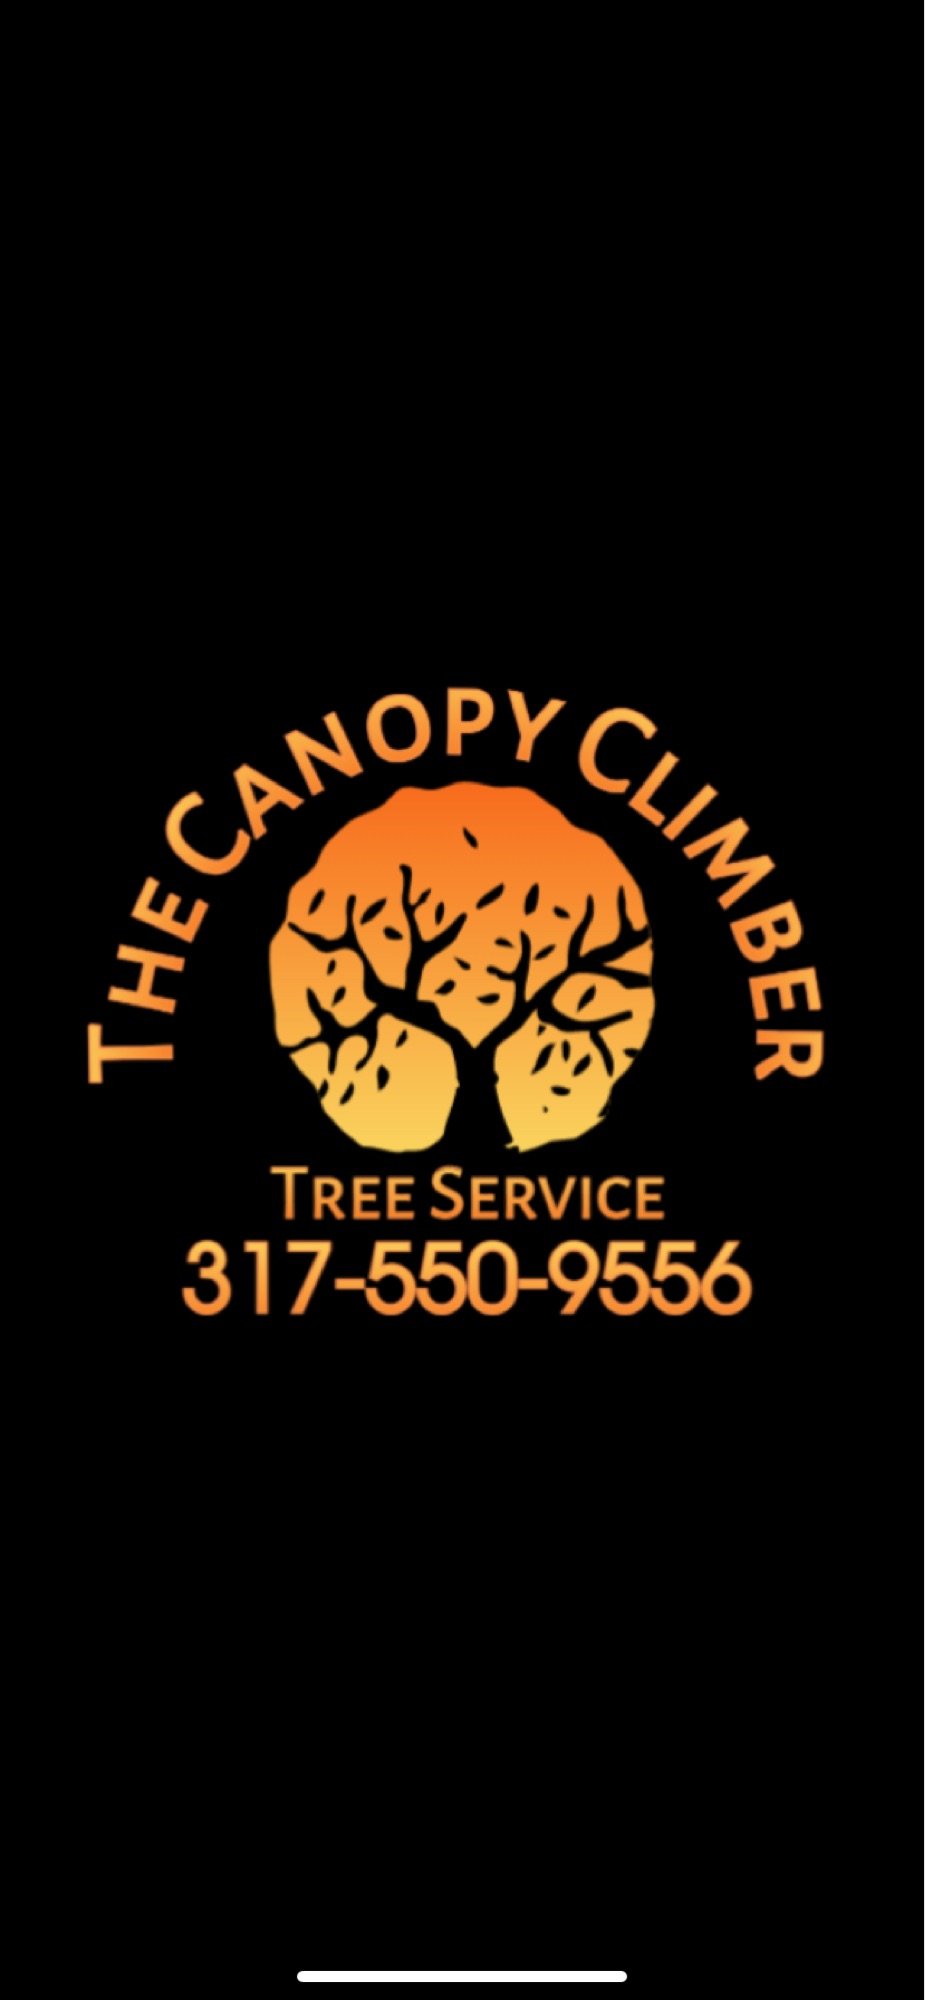 The Canopy Climber Tree Service Logo